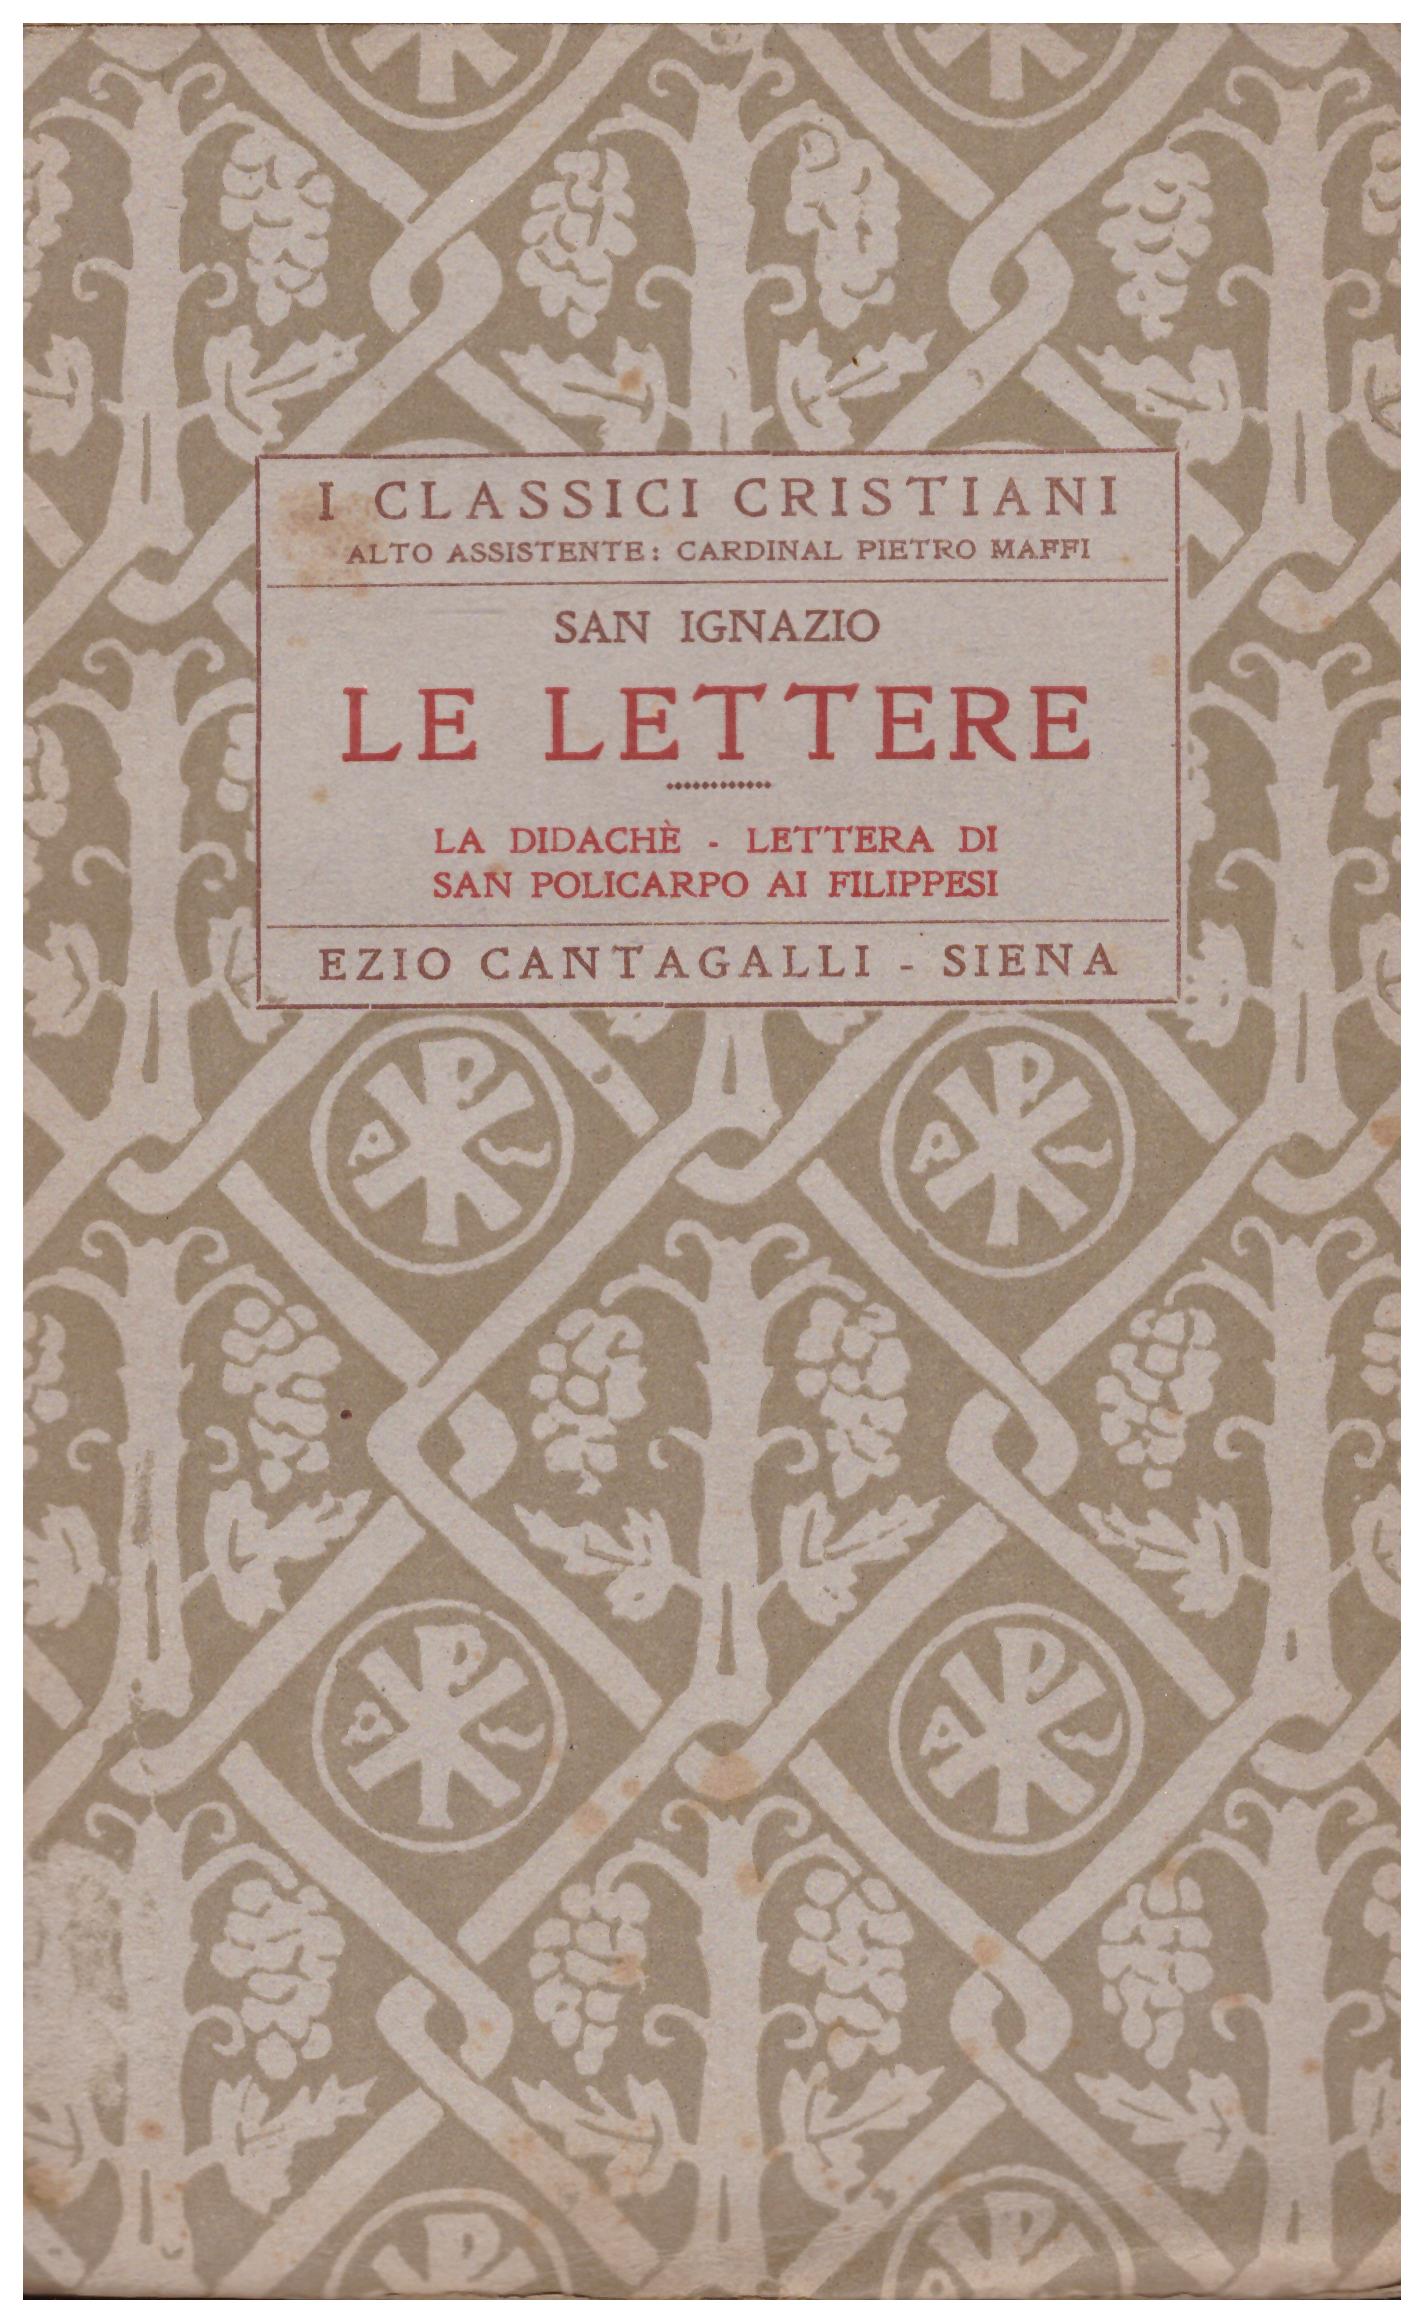 Titolo: I classici cristiani, Le lettere, volume primo  Autore : San Ignazio  Editore: Ezio Cantagalli, Siena